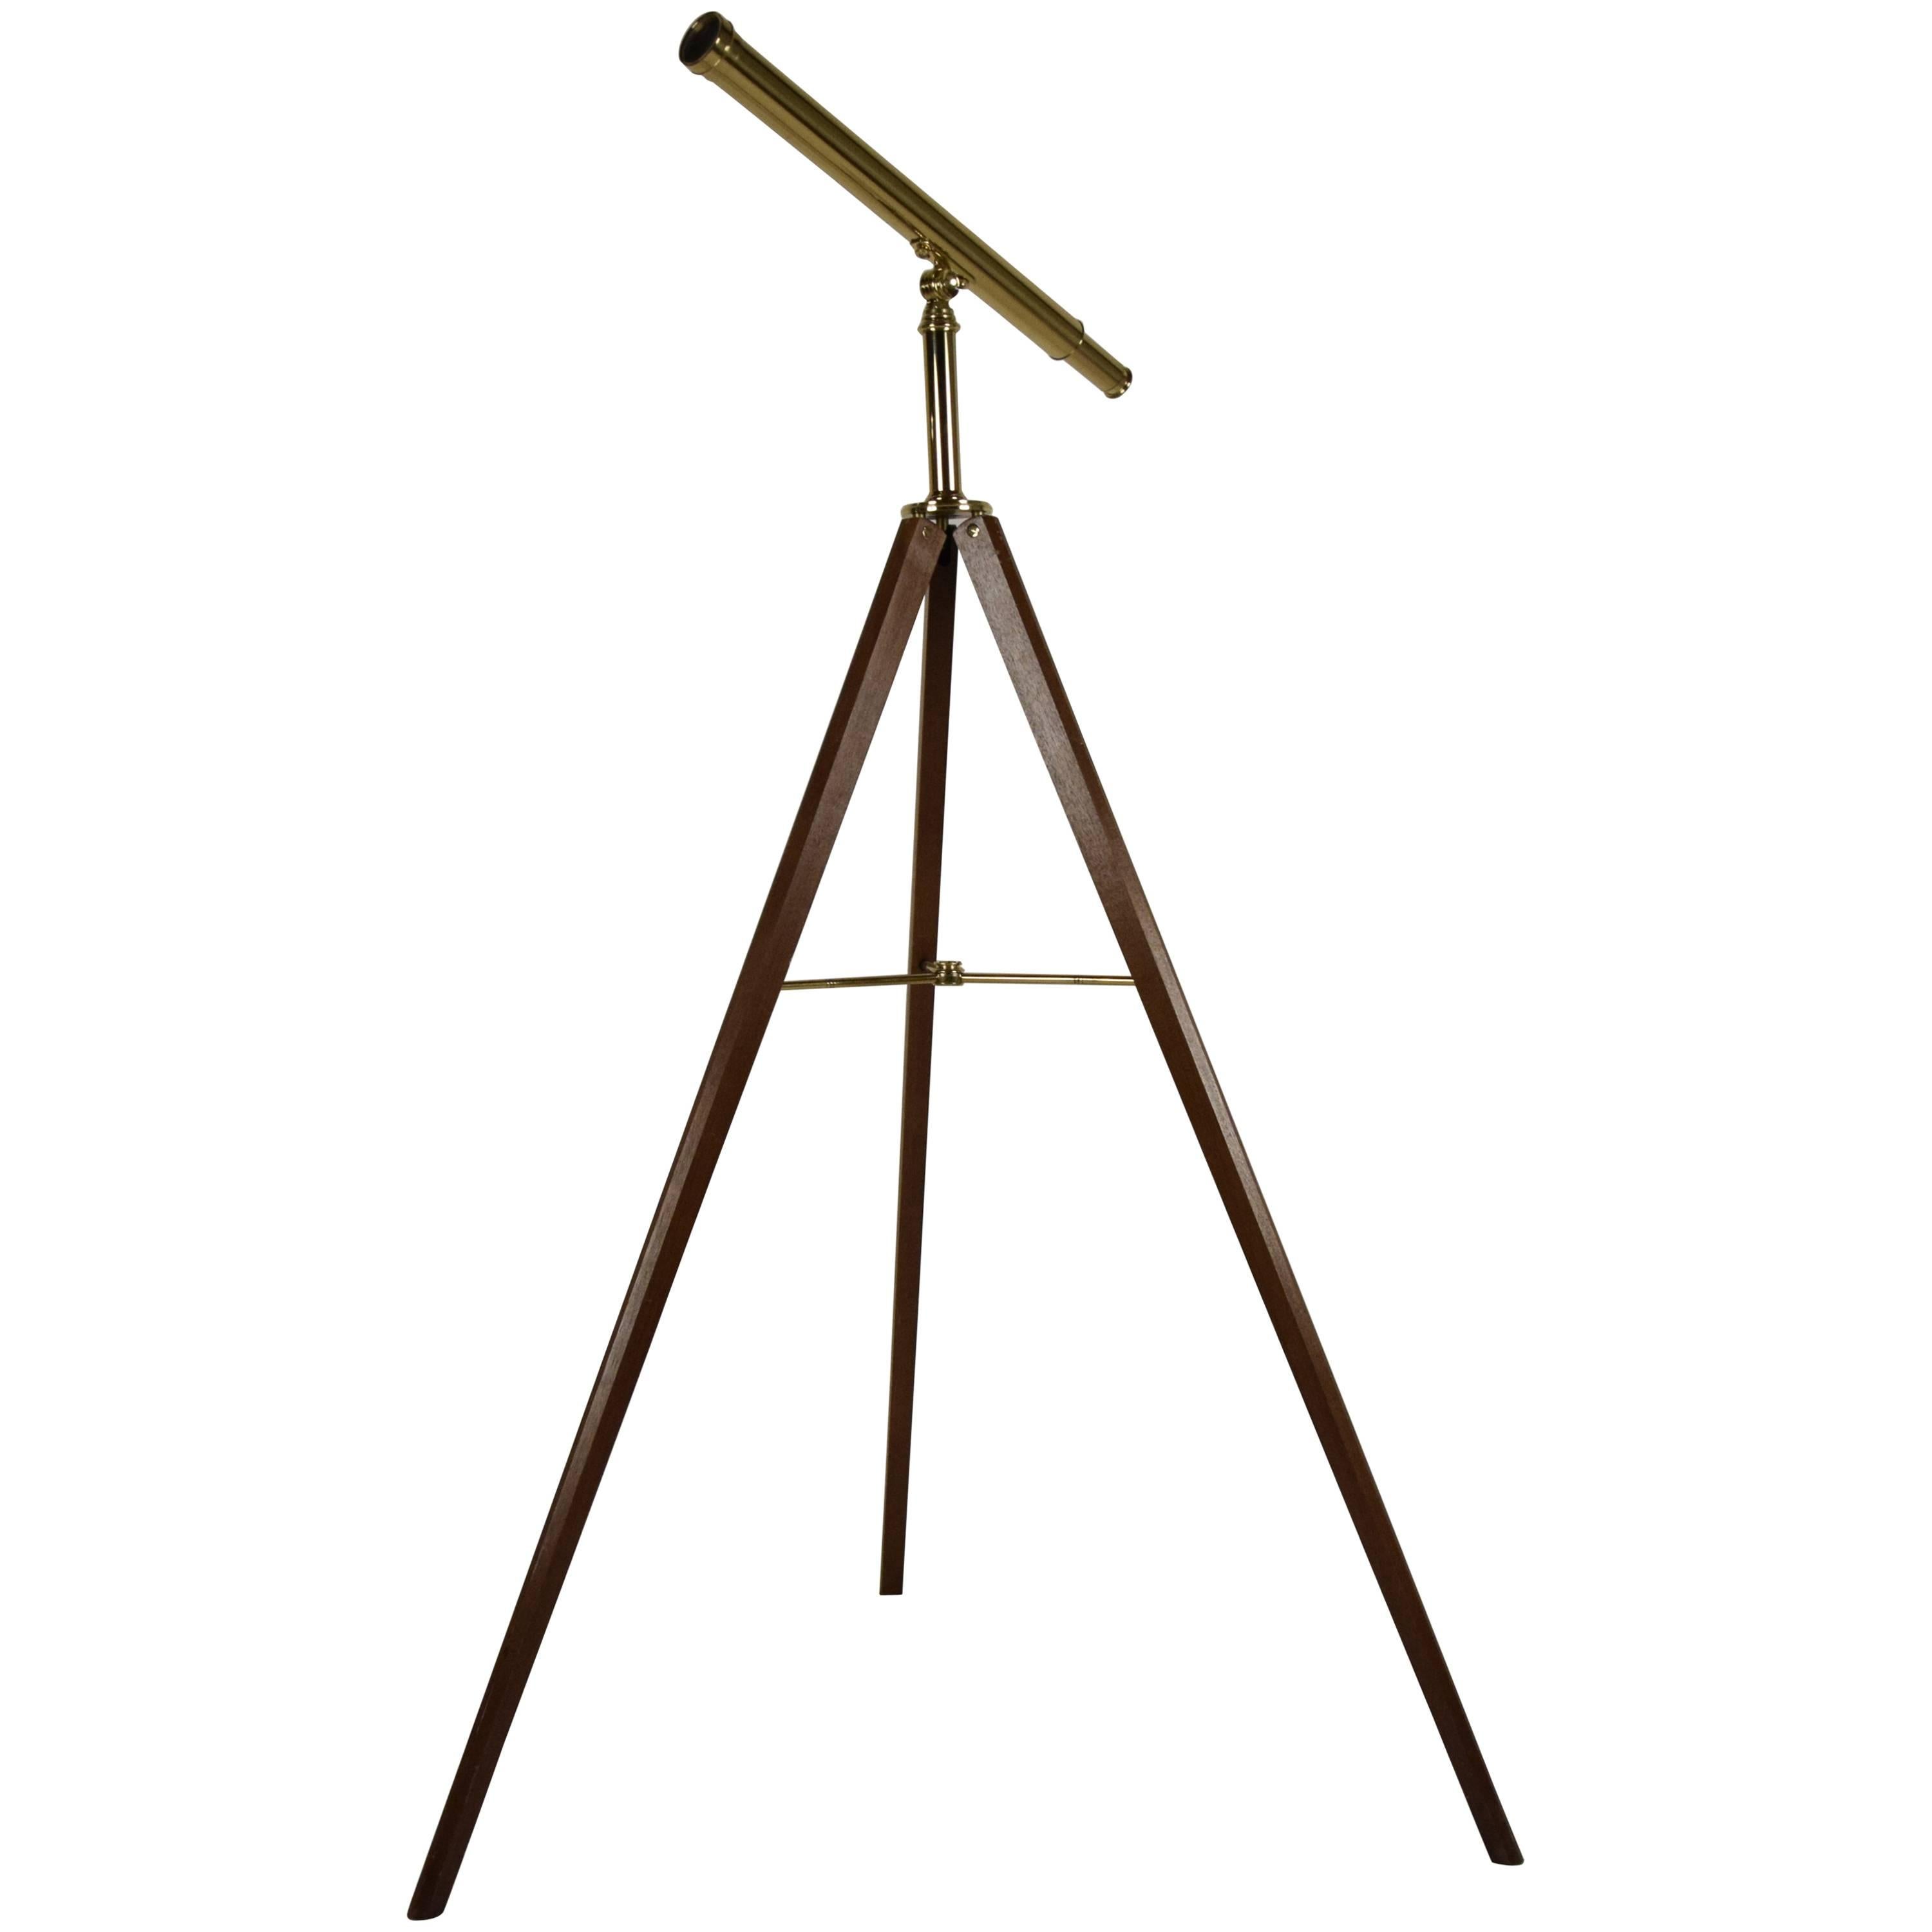 Vintage Van Cort Instrument Makers Brass Telescope